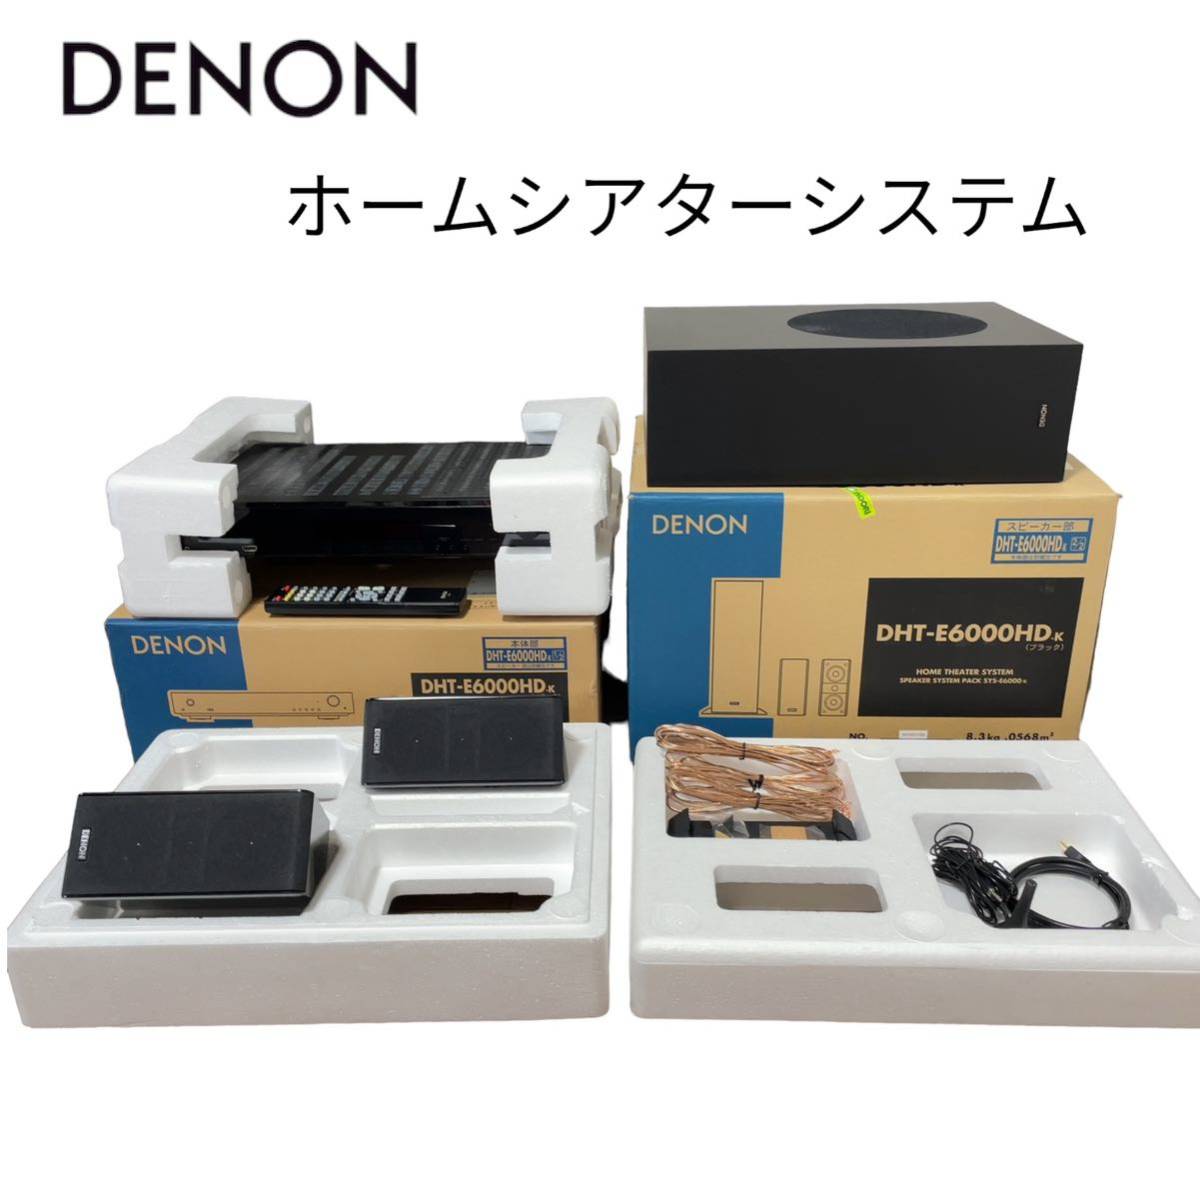 ★新品同様★ DENON デノン ホームシアターシステム 2.1ch DHT-E6000HD エディオン専売モデル ツィーター機能付き オーディオ機器